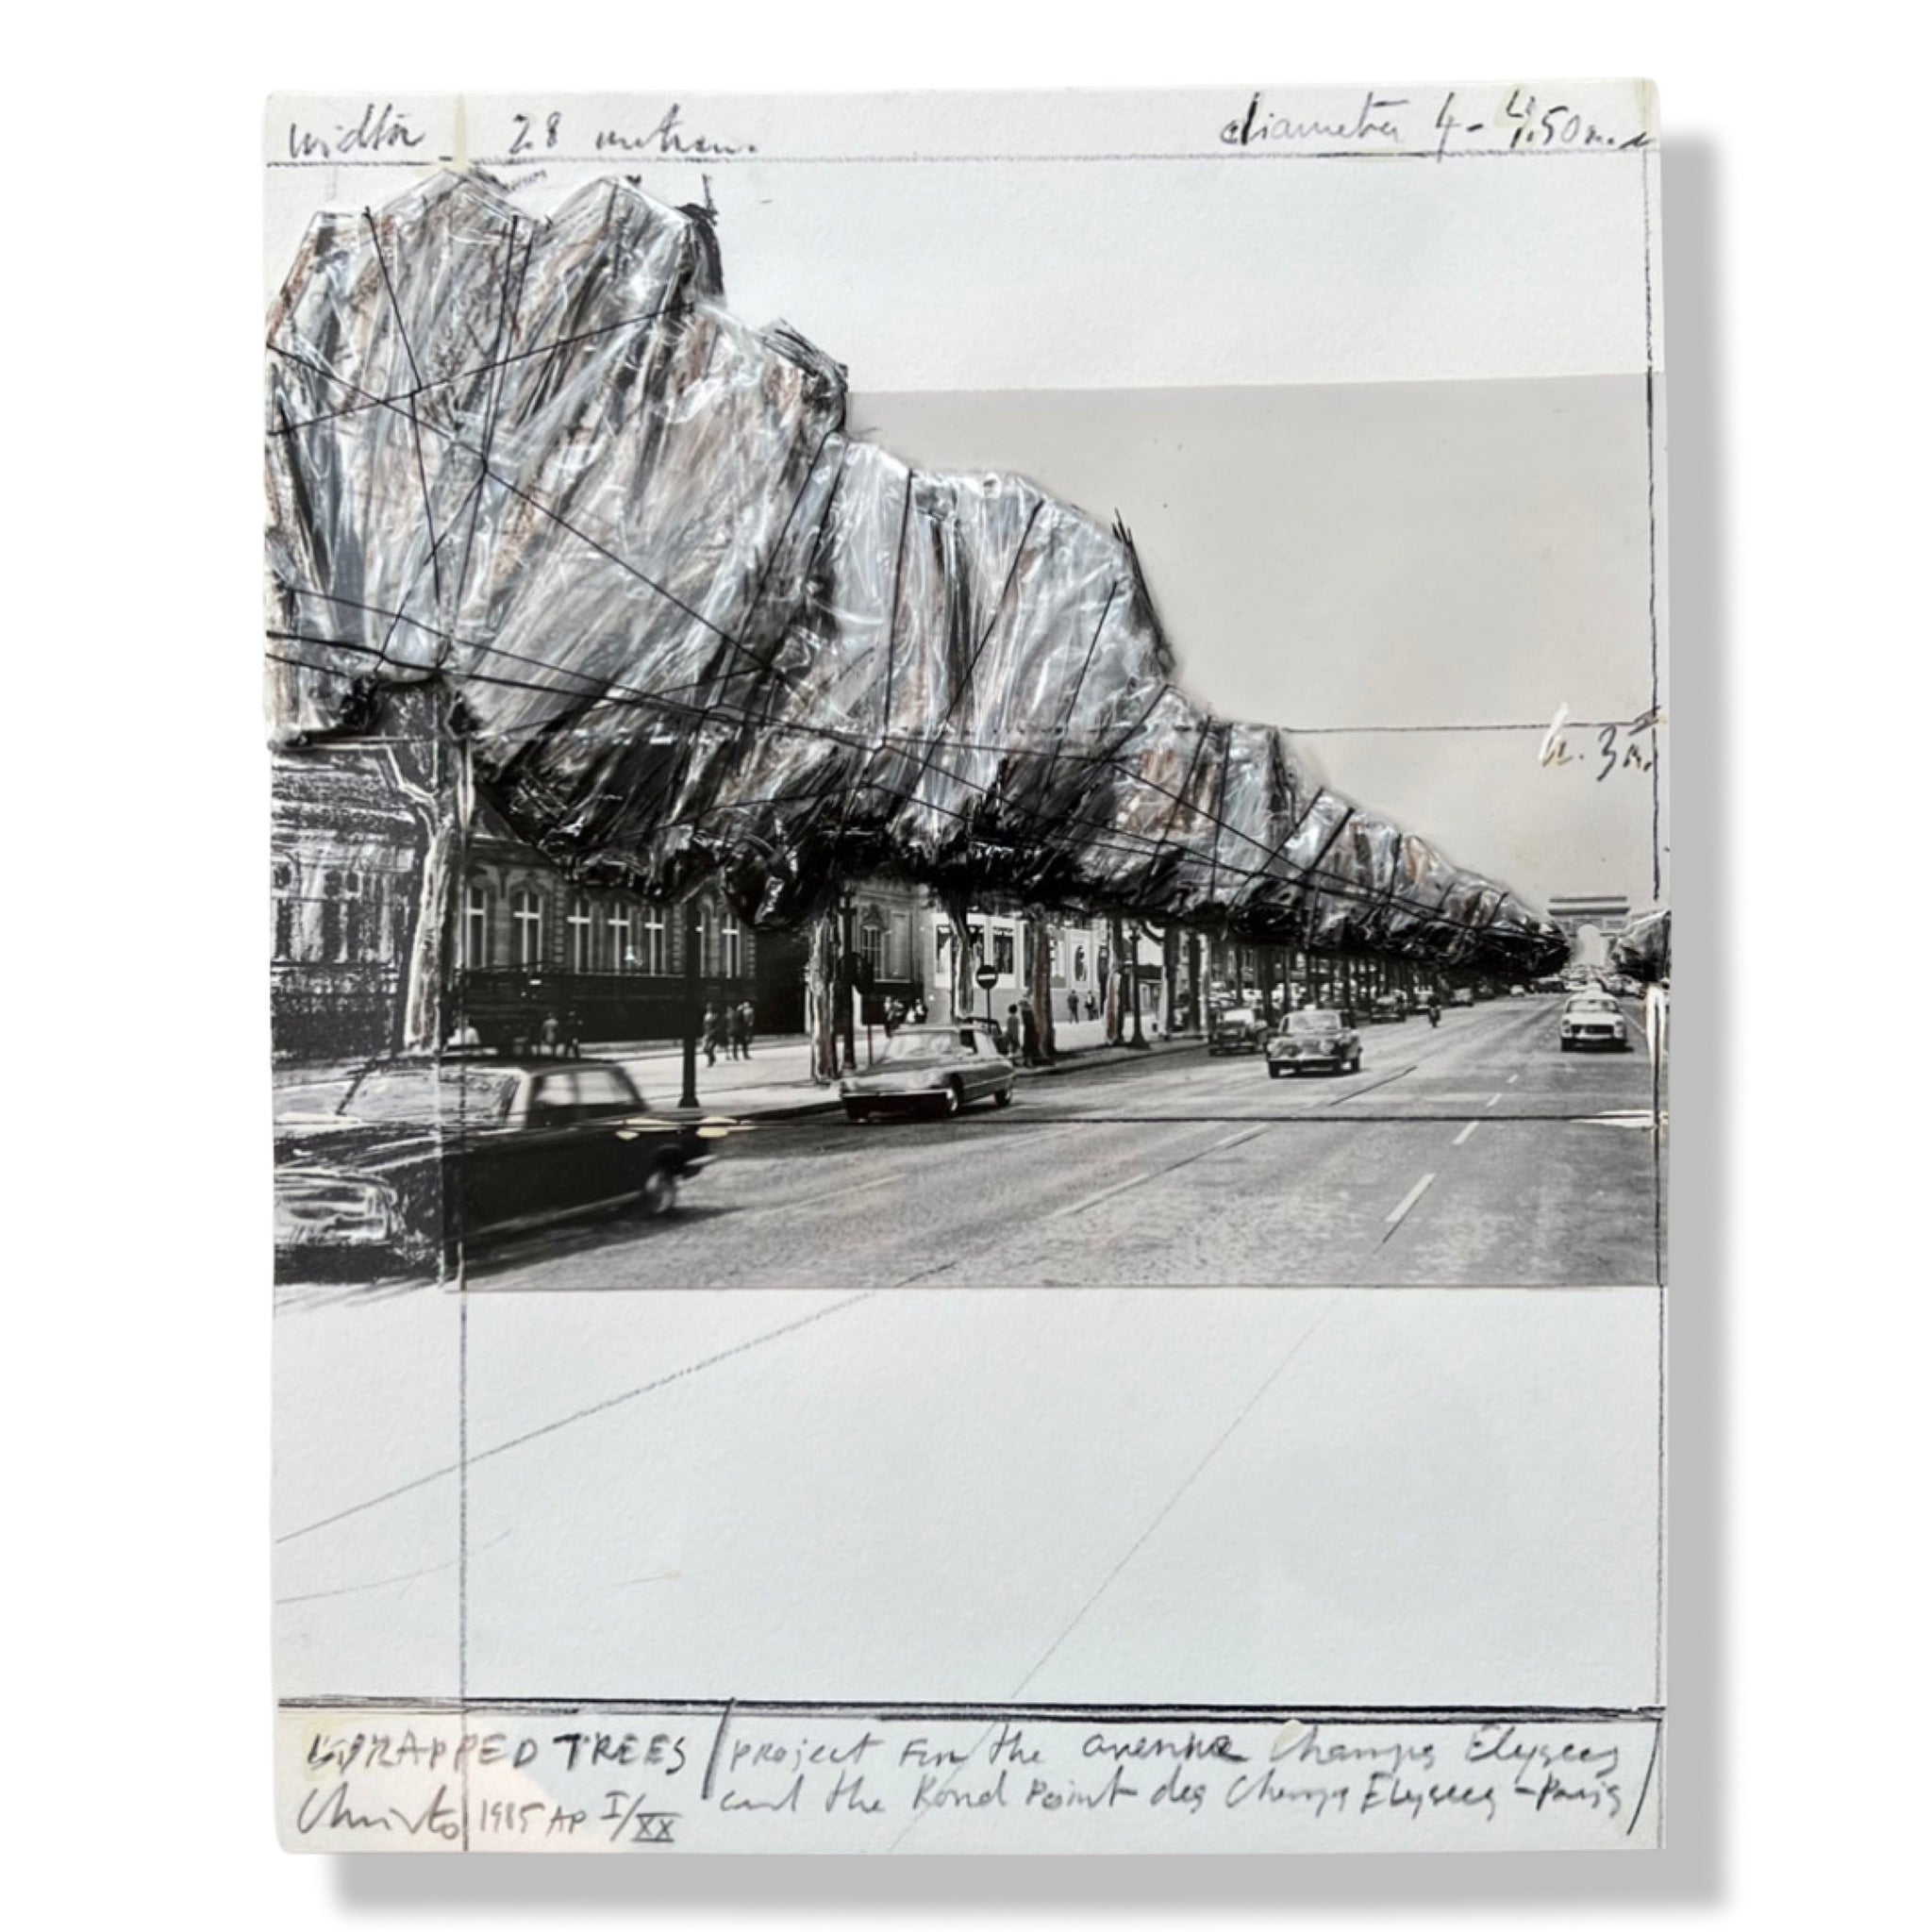 Christo and Jeanne-Claude - Wrapped Trees, Project for the Avenue des Champs-Elysées, Paris